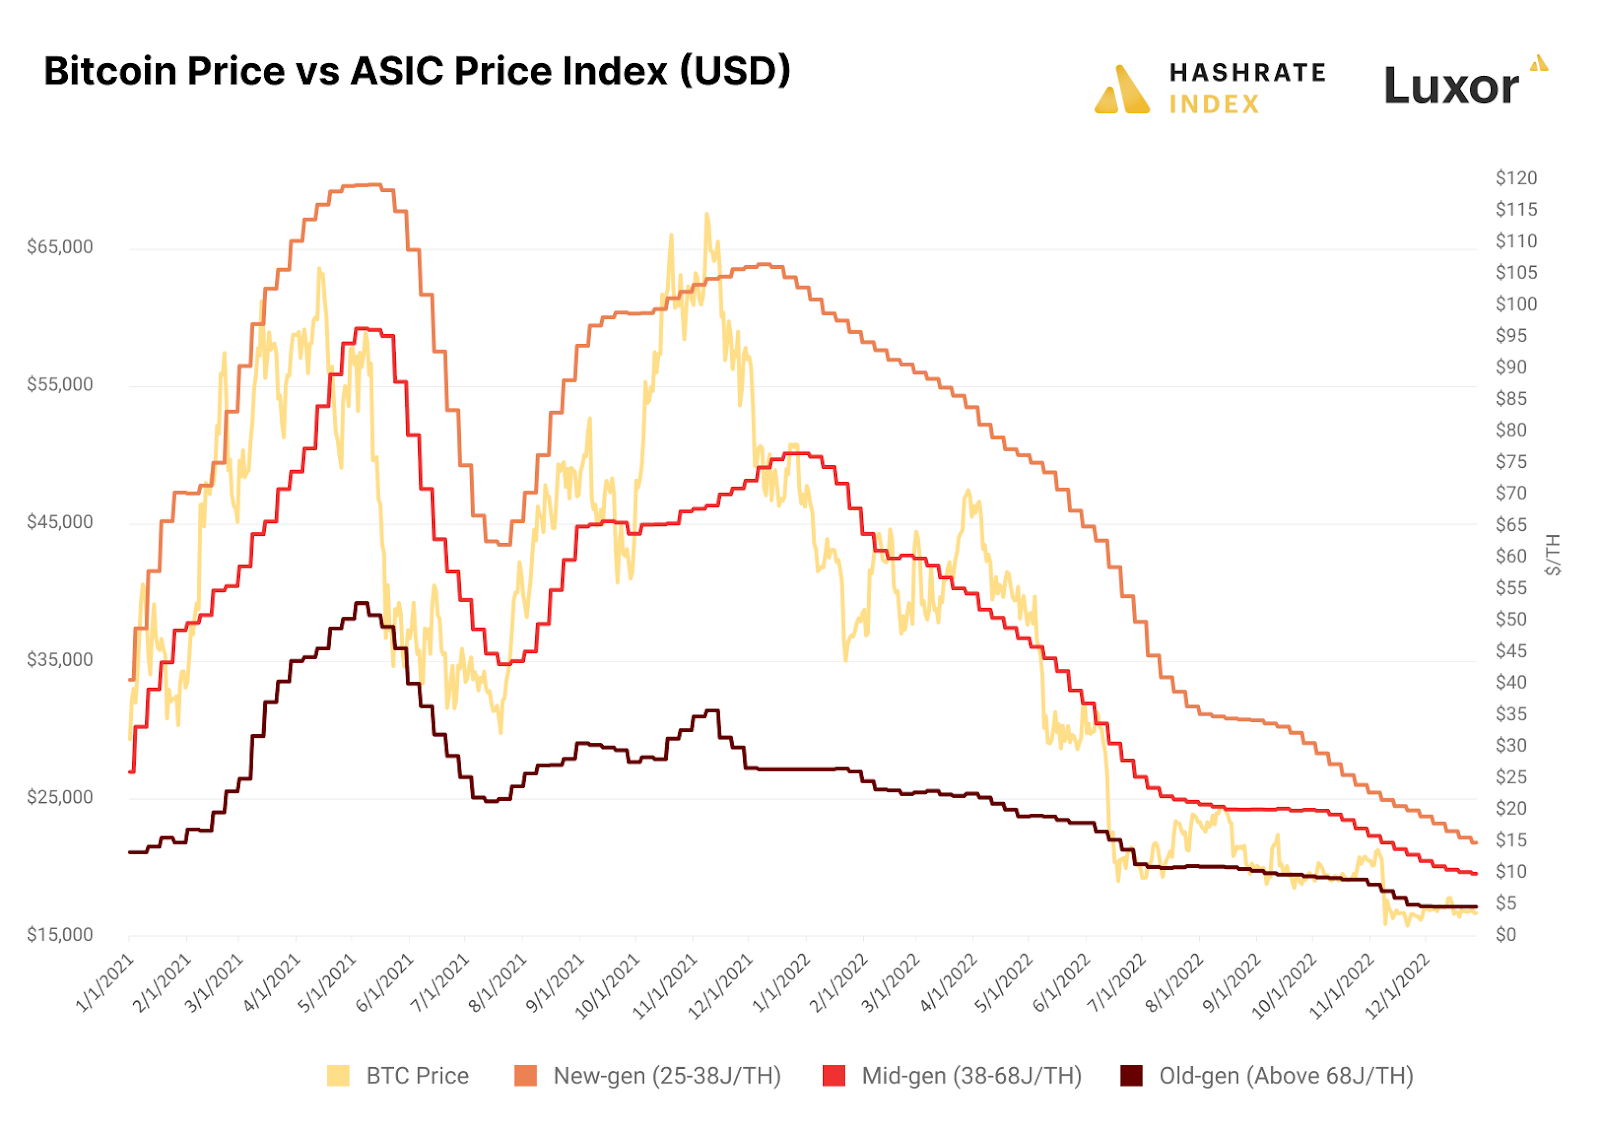 Source: Hashrate Index ASIC Price Index